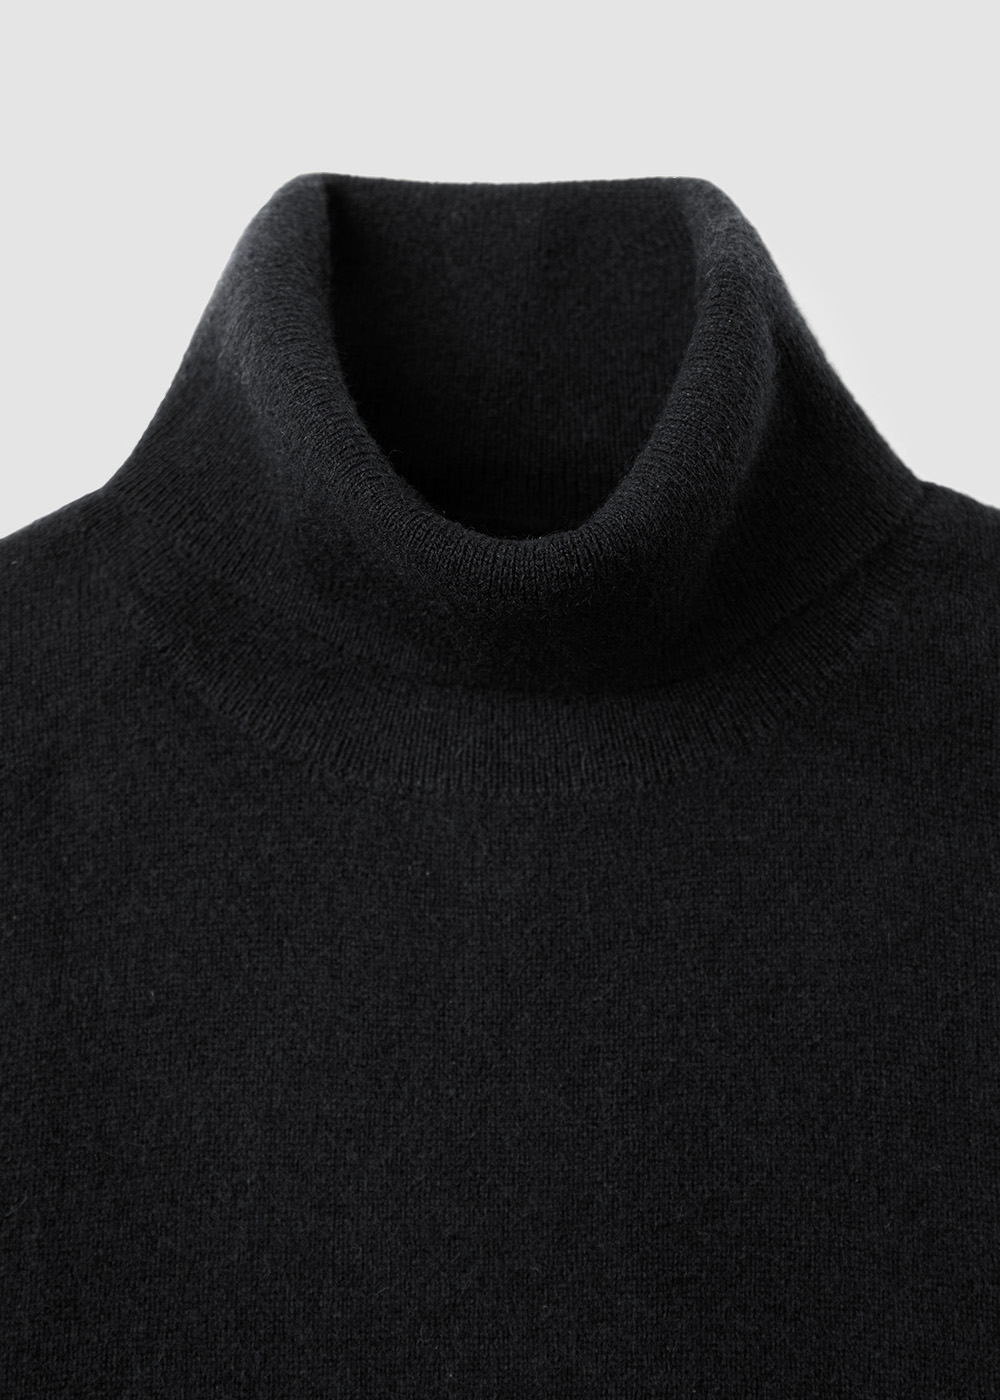 Cashmere 30% Blended Turtleneck Knit _ black